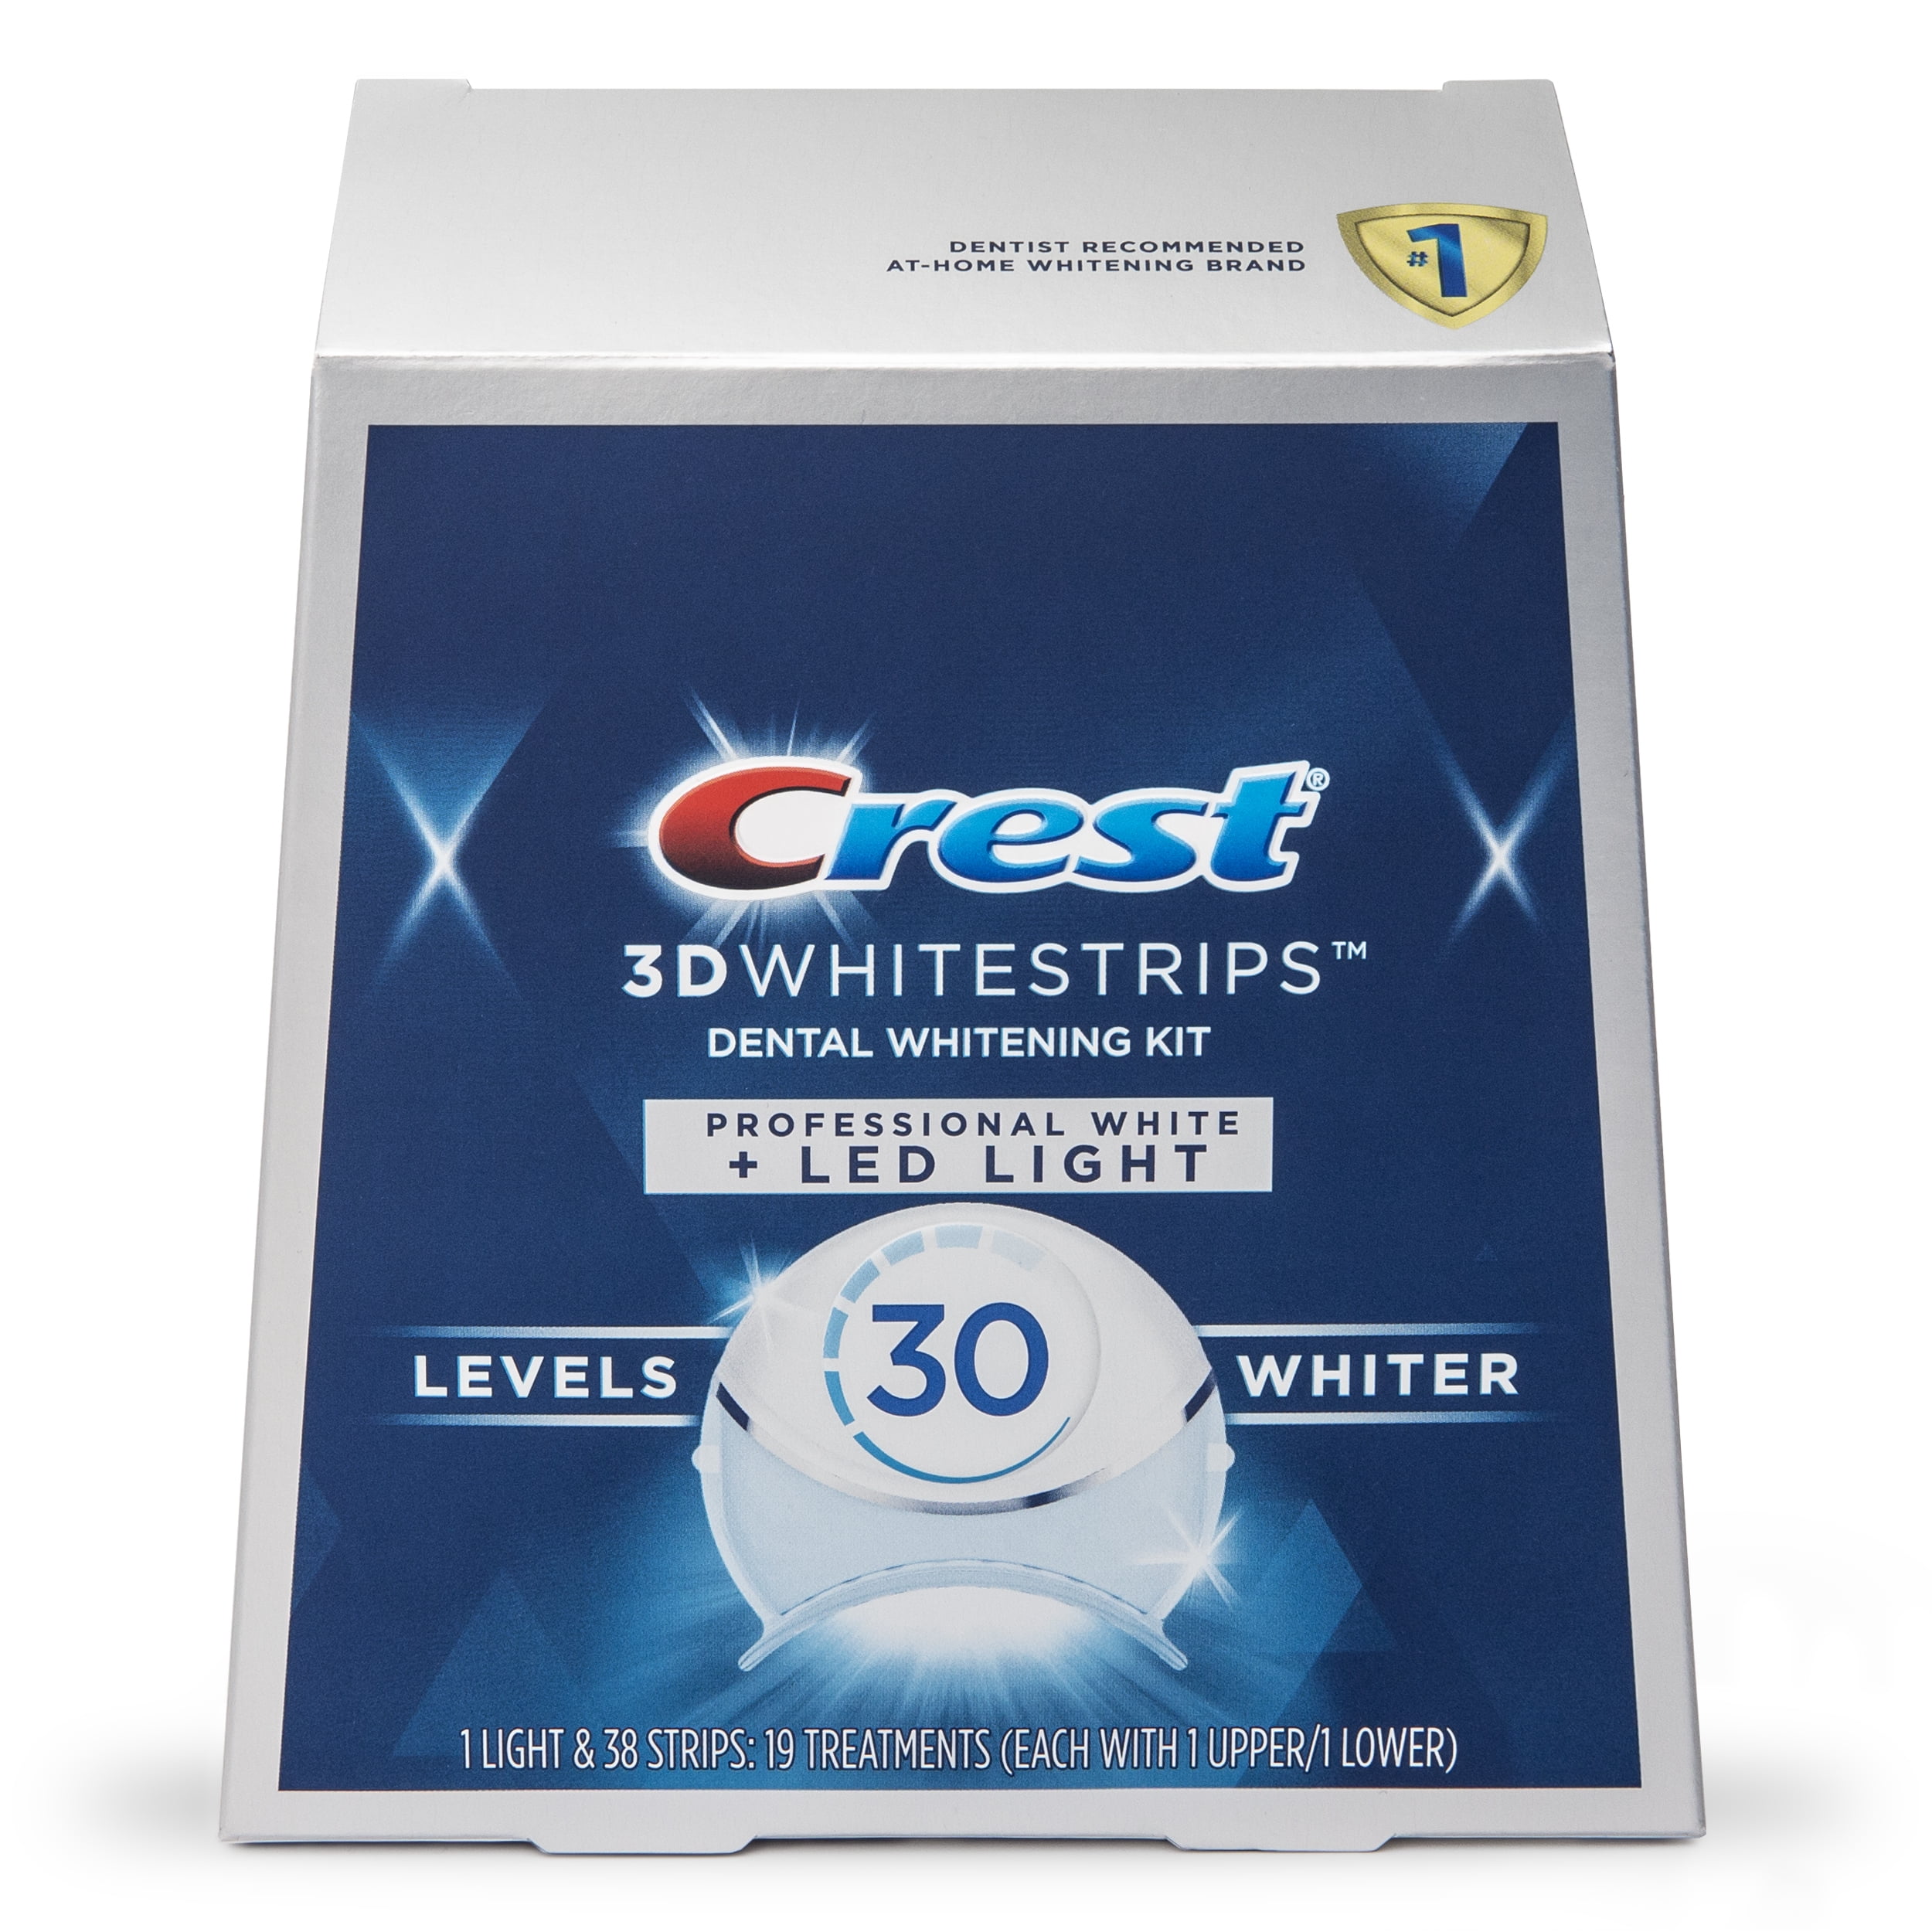 For en dagstur lån Virus Crest 3DWhitestrips Professional White with LED Accelerator Light At-home  Teeth Whitening Kit, 19 Treatments, 30 Levels Whiter - Walmart.com